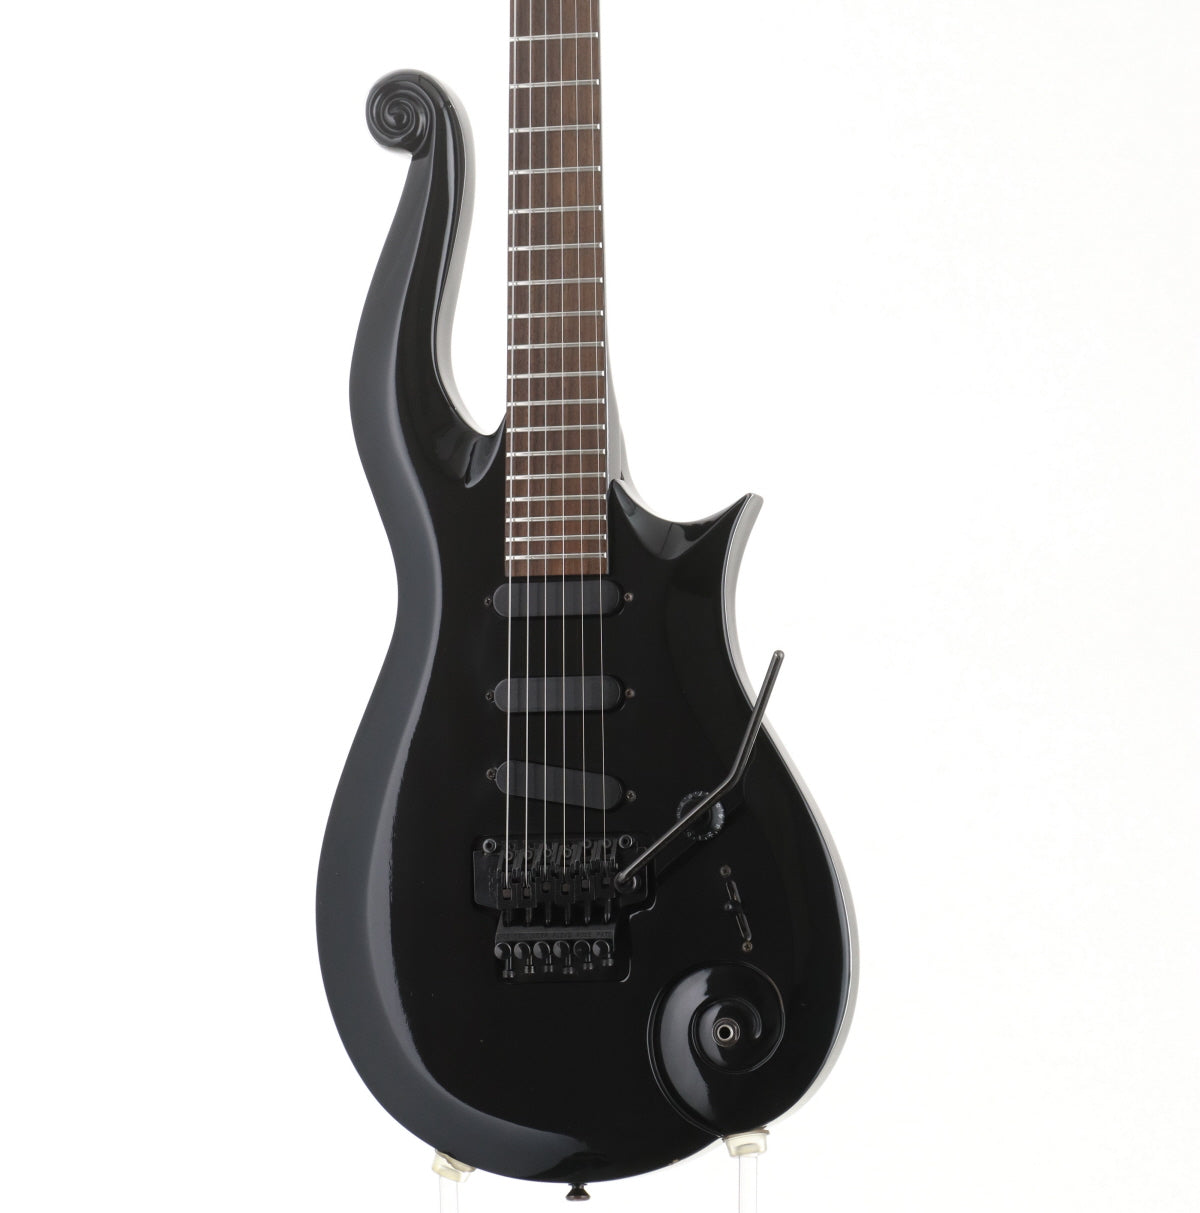 EDWARDS SUGIZO LUNA SEA☆SUGIZOモデルギターES-100PRⅢ - 楽器、器材